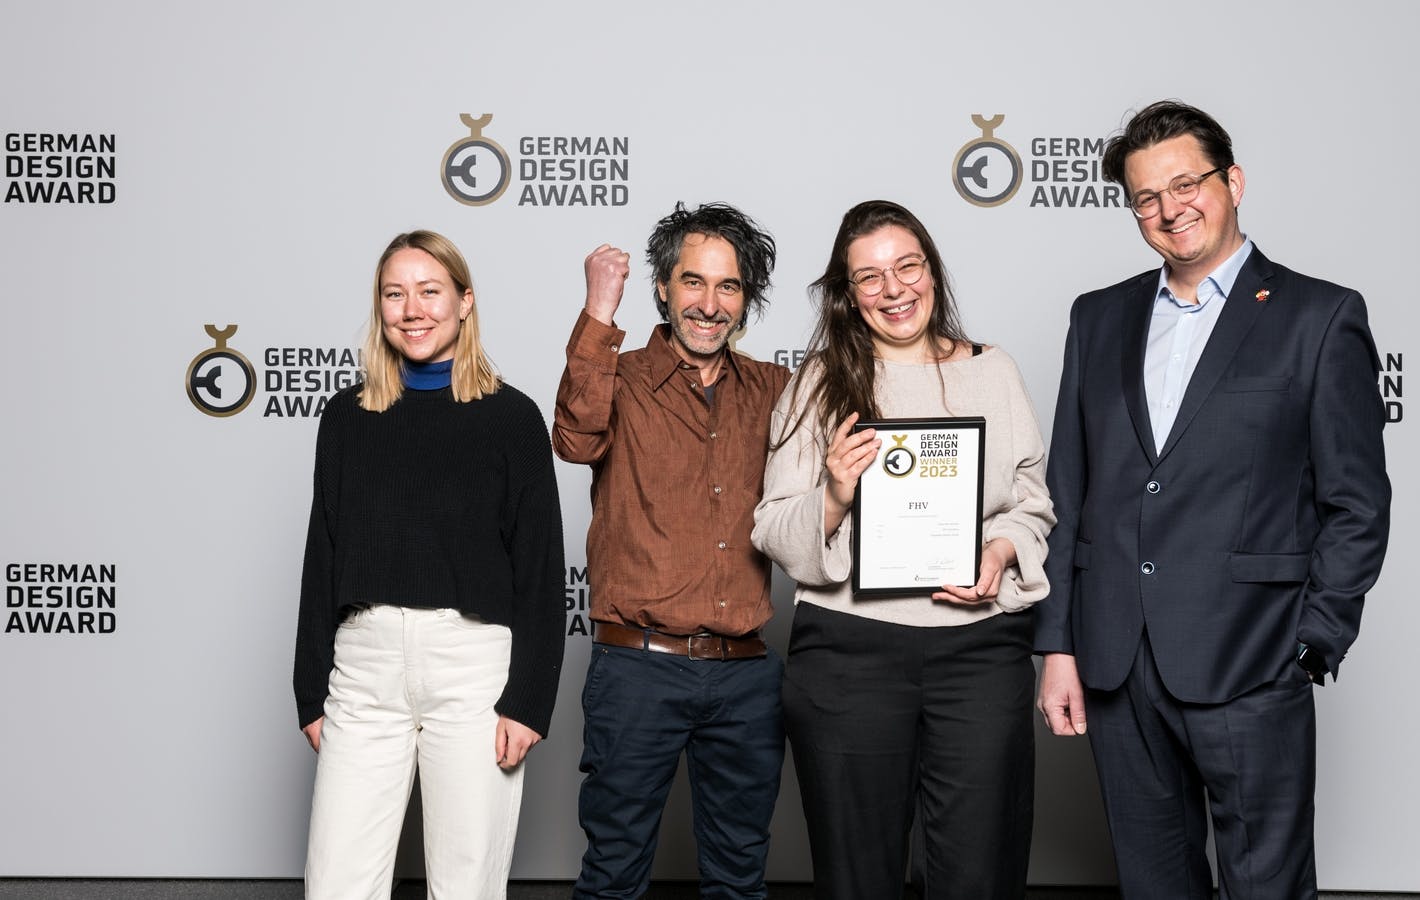 Der German Design Award für den Markenrelaunch der FHV: Susanne Büchele, Klaus Österle, Sabine Grohe und Oliver Ruhm (v.l.) © Photography Concepts Sternstein